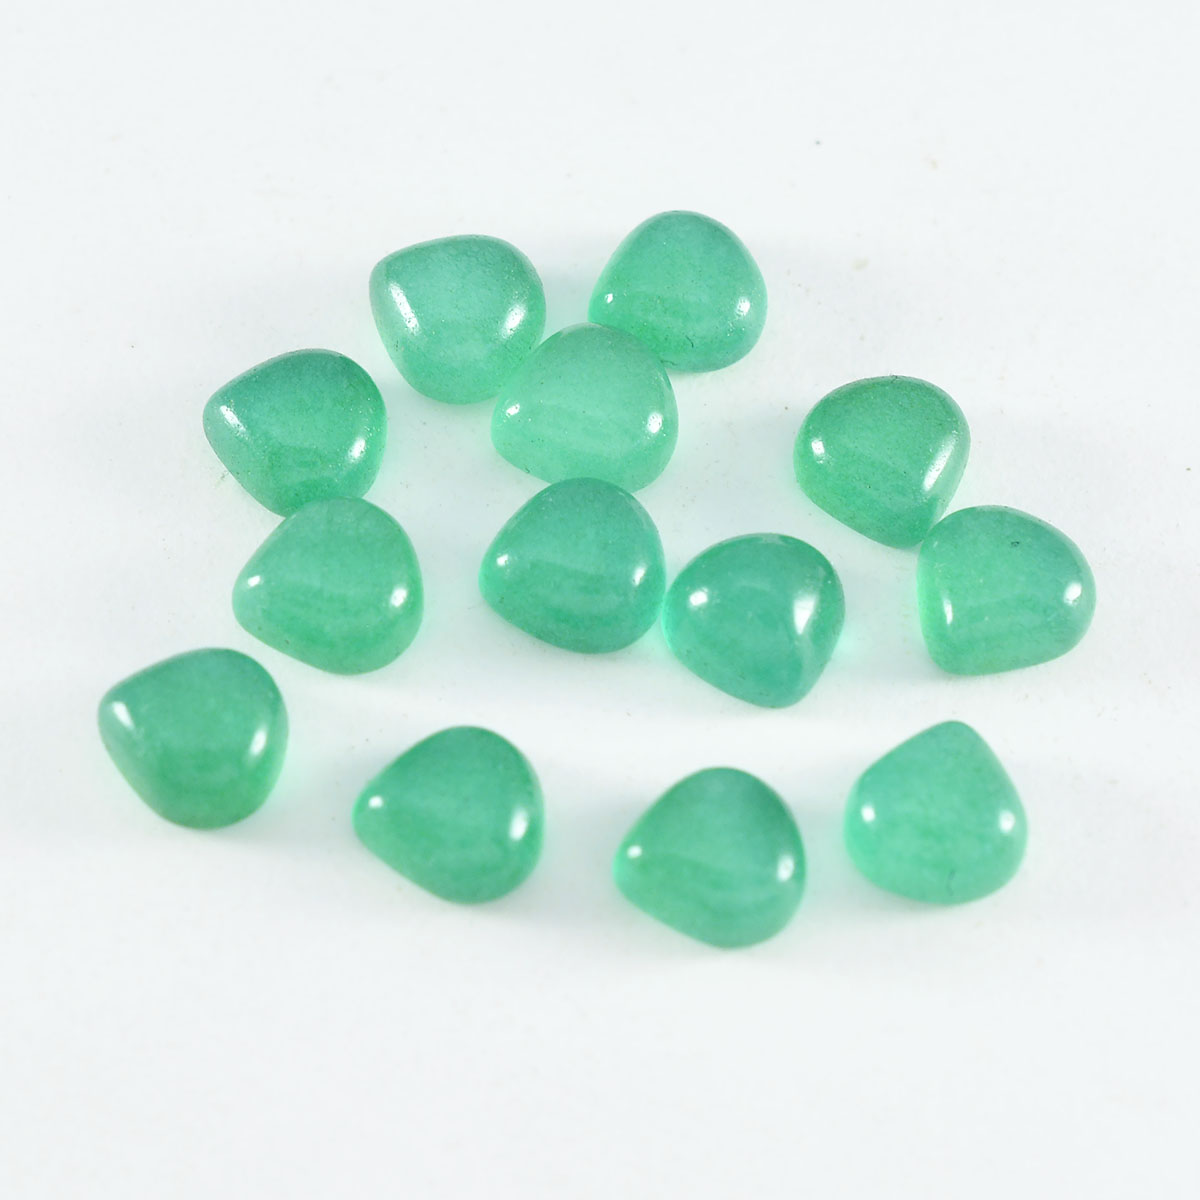 Riyogems 1 cabujón de ónix verde de 0.276 x 0.276 in en forma de corazón, piedra preciosa suelta de buena calidad